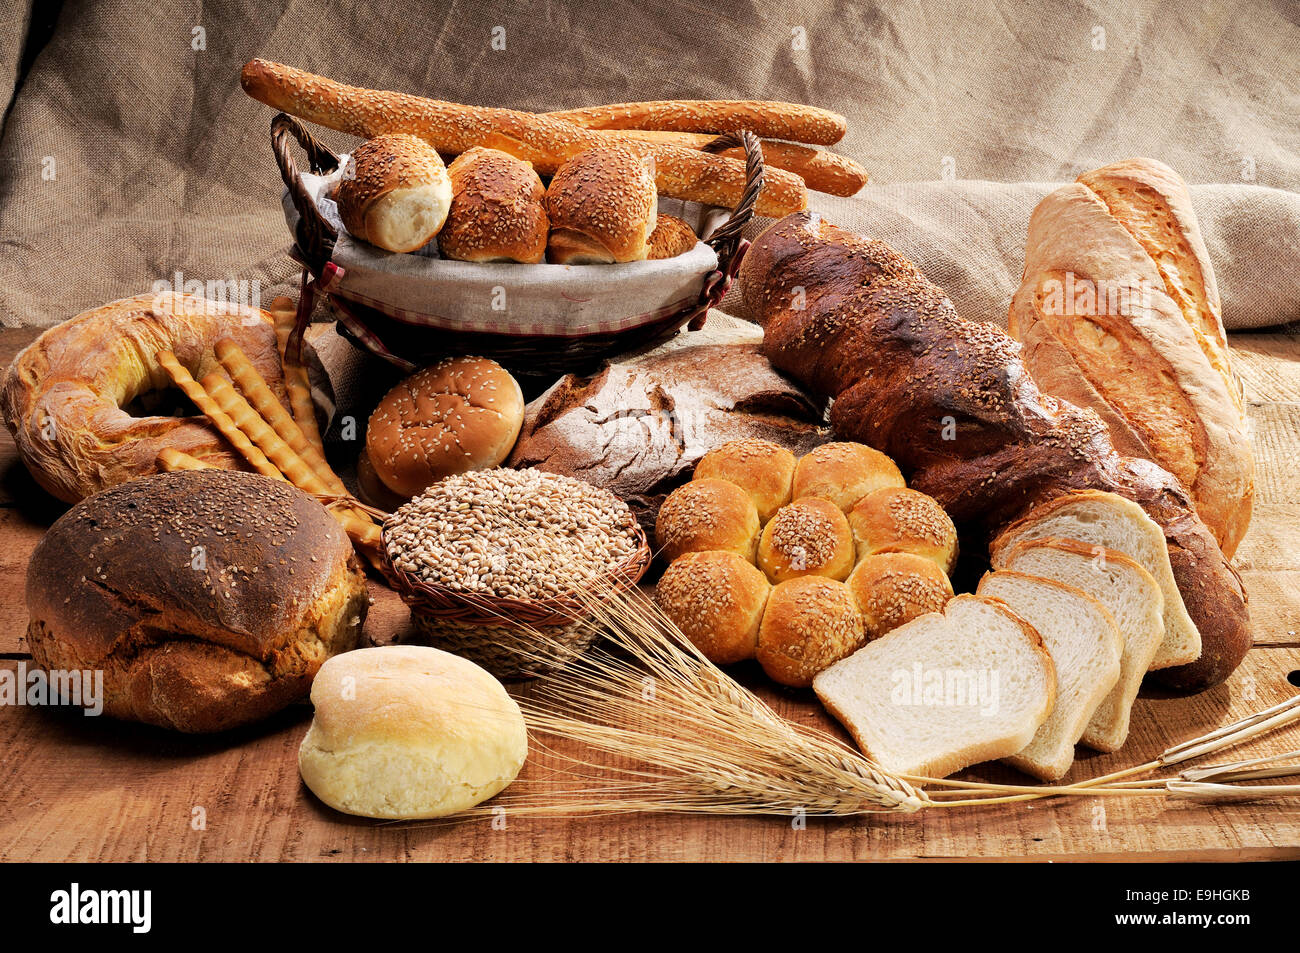 Frisch gebackenes knuspriges Brot, im traditionellen Holzofen gebacken Stockfoto